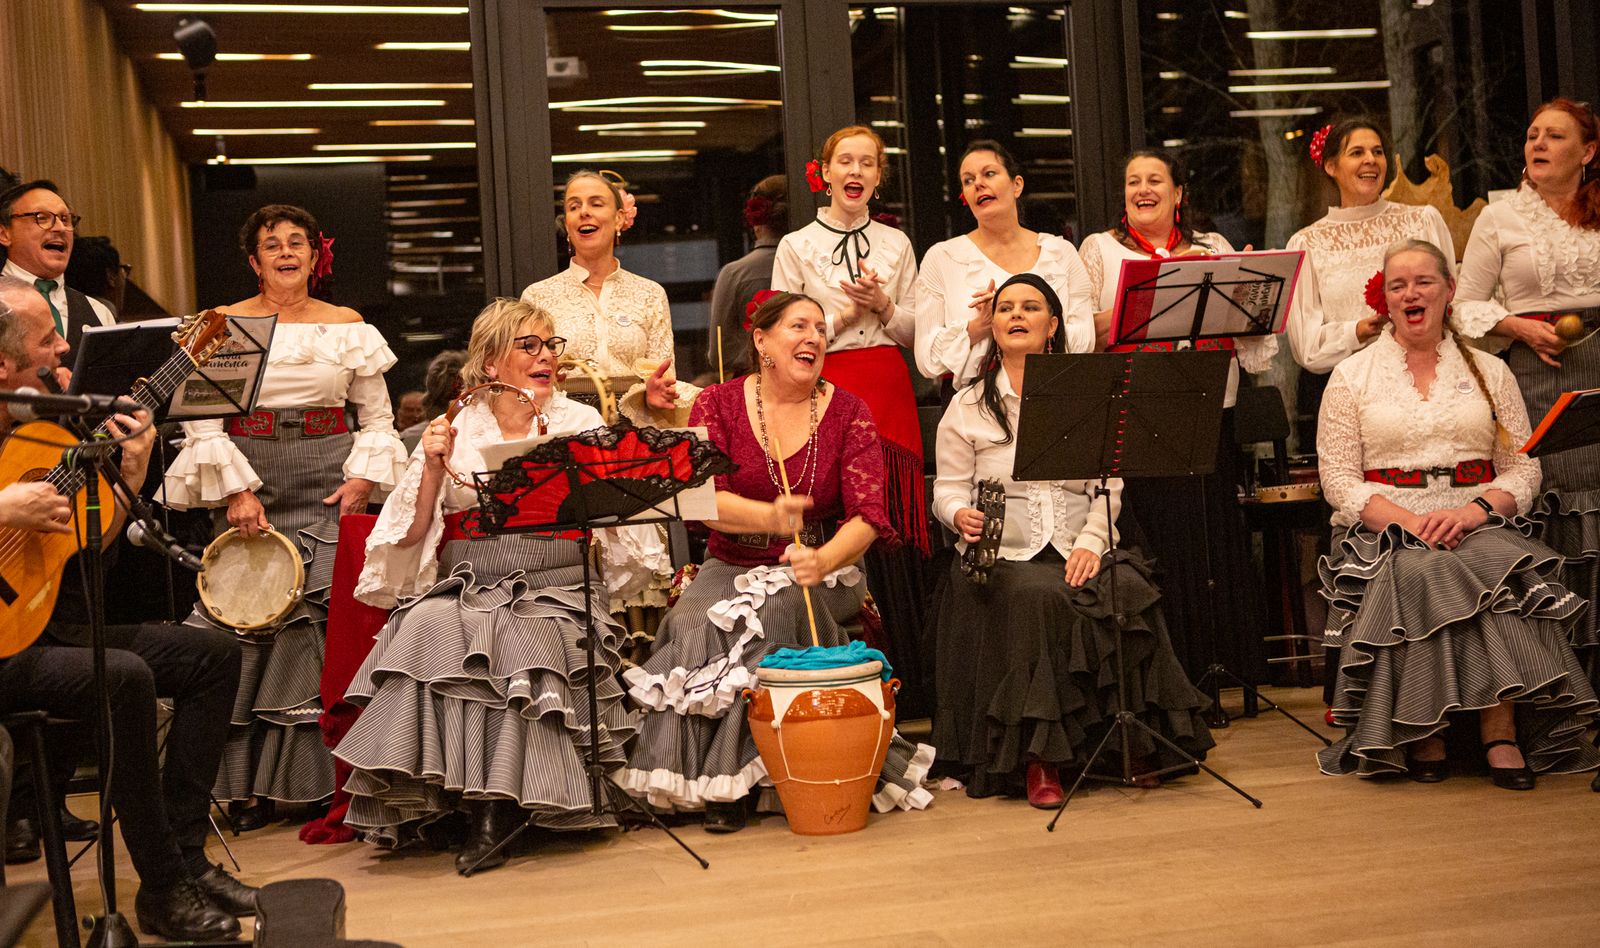 Op de zondagen 10 en 17 december zingt het huiskoor Savia Flamenca kerstliedjes. Kom luisteren en meezingen vanaf 16u